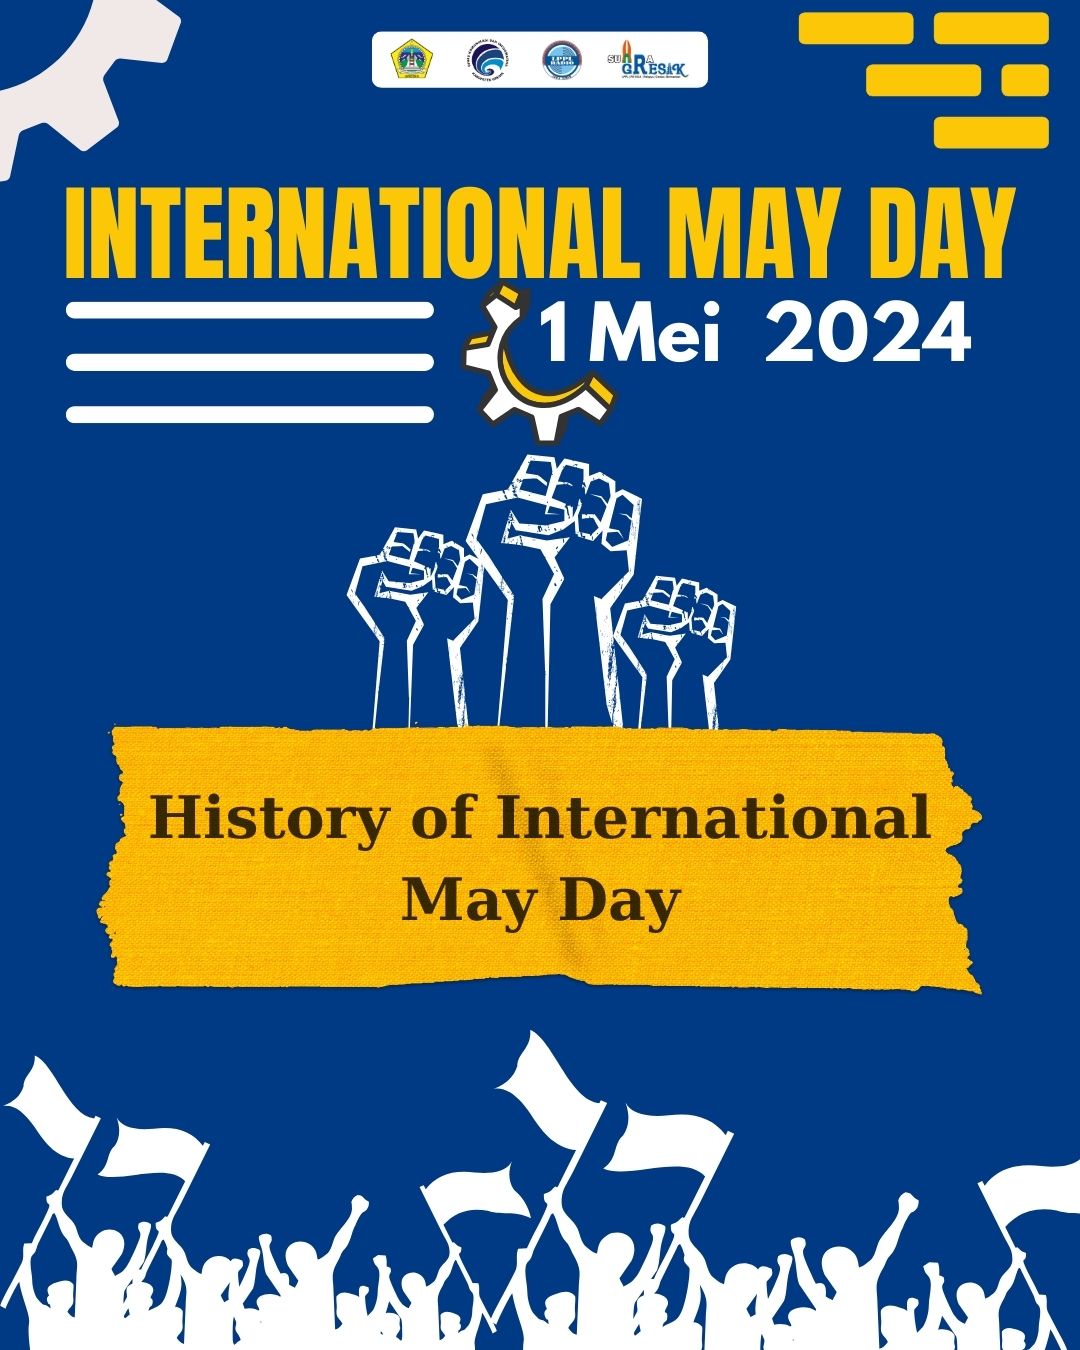 Internasional May Day